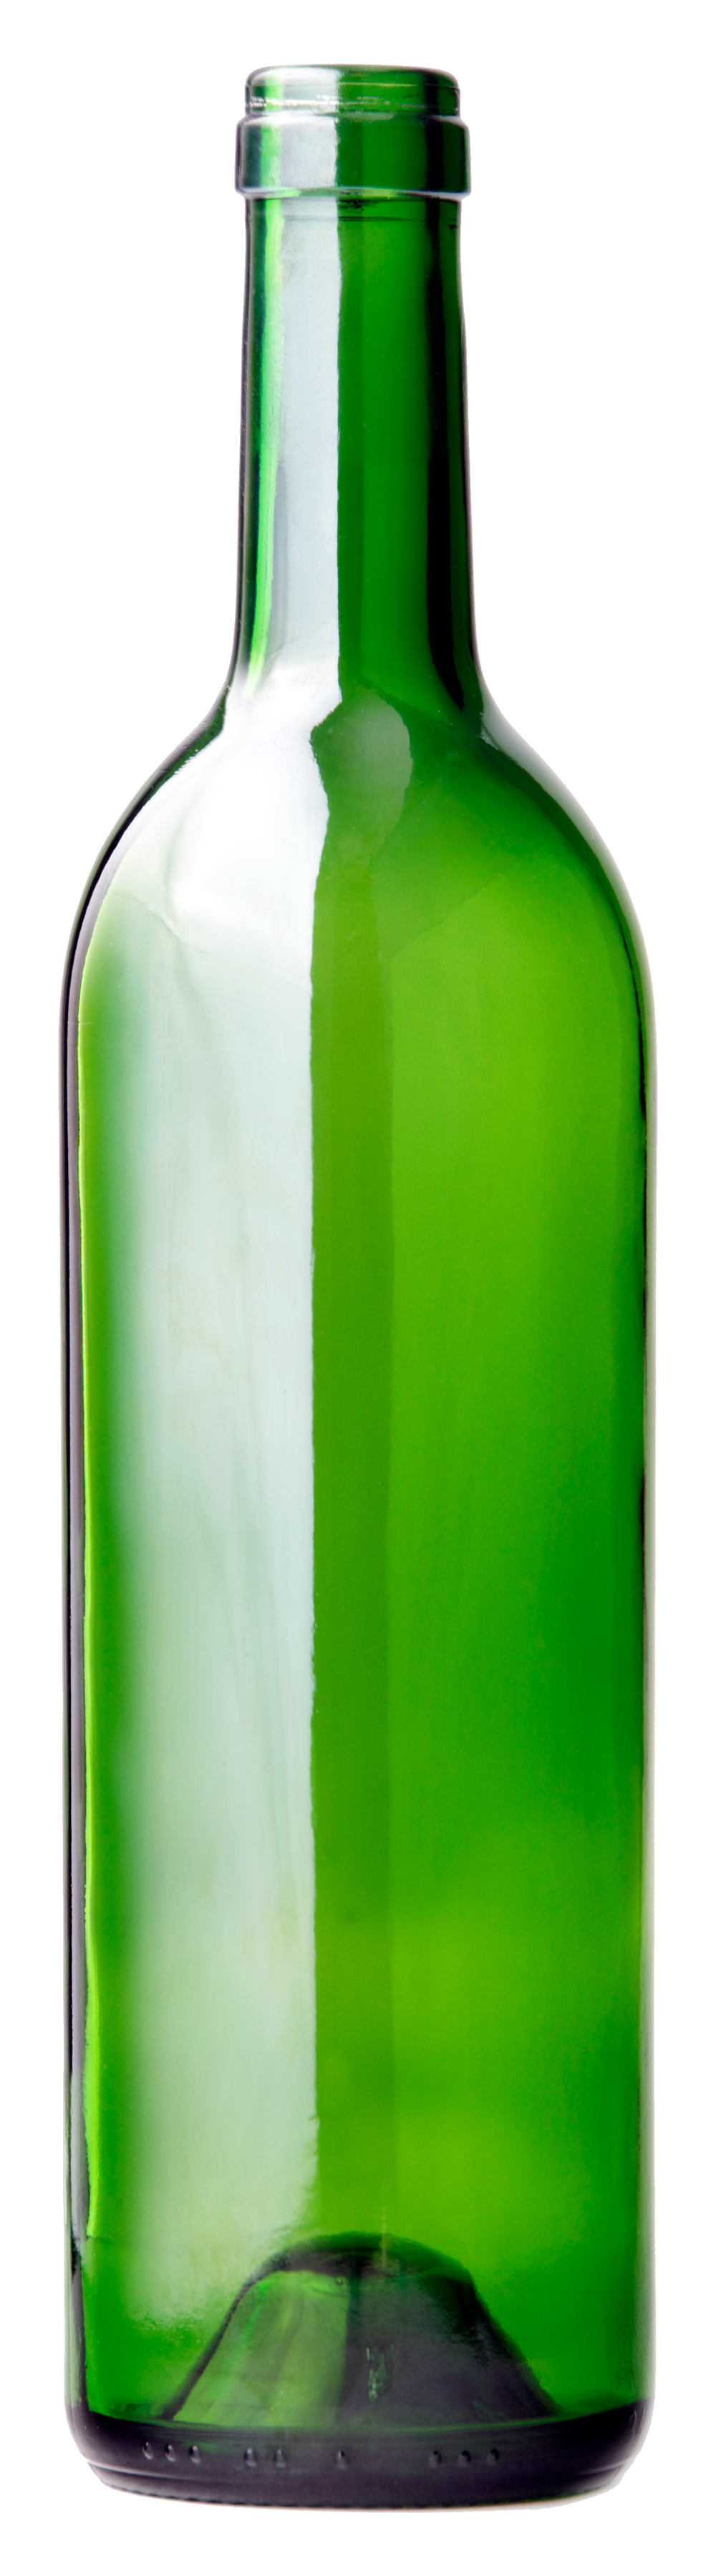 Bottle PNG Image